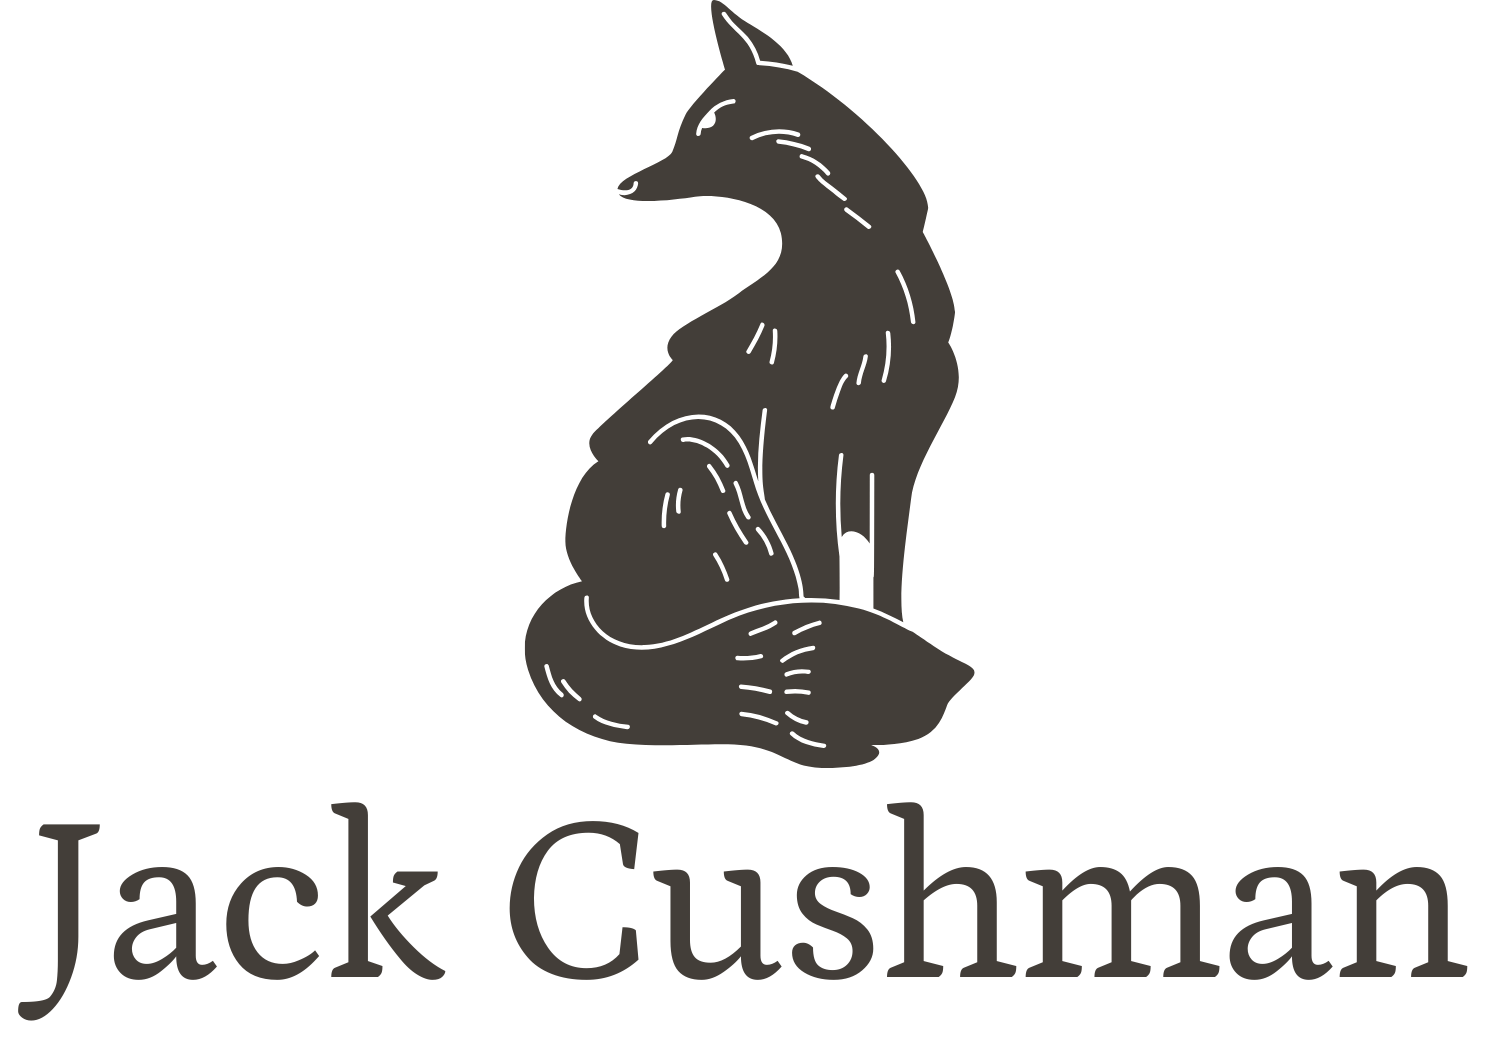 www.jackcushman.com